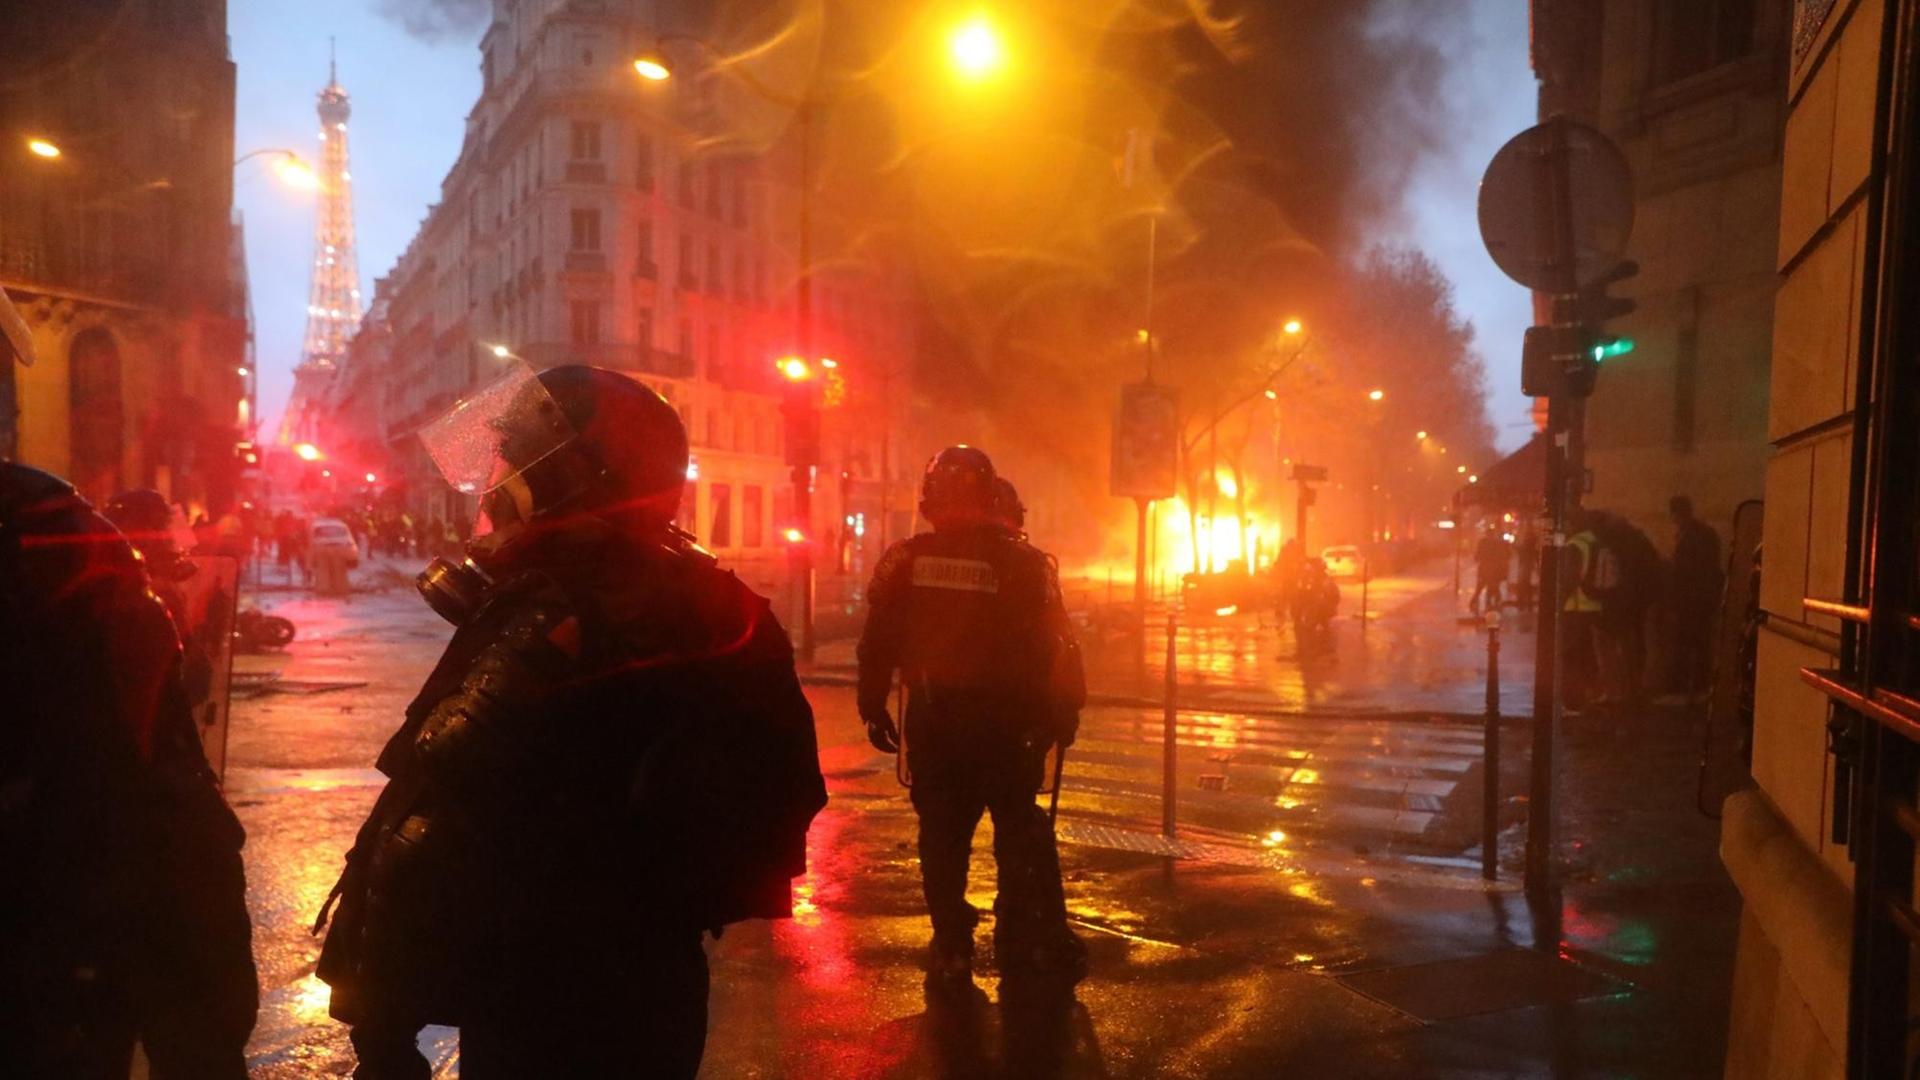 In Paris kommt es zu schweren Auseinandersetzungen zwischen Demonstranten und der Polizei an. Randalierer setzten dutzende Autos und sogar Häuser in Brand. Rund um die Champs-Élysées stiegen dichte Wolken aus Rauch und Tränengas auf.